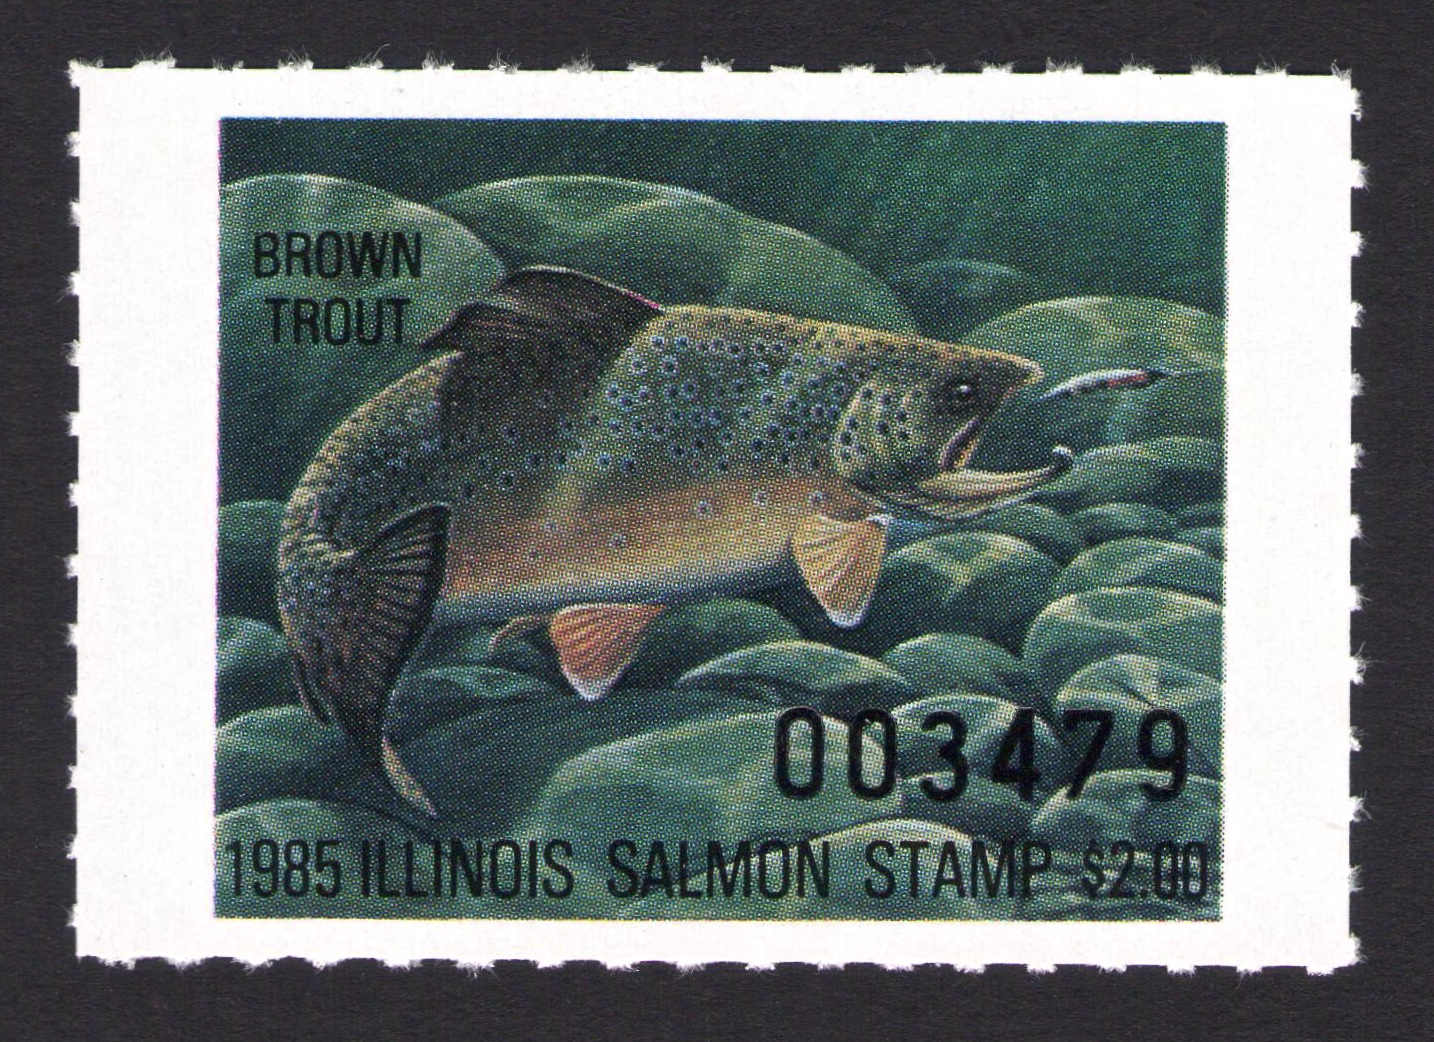 1985 Illinois Salmon